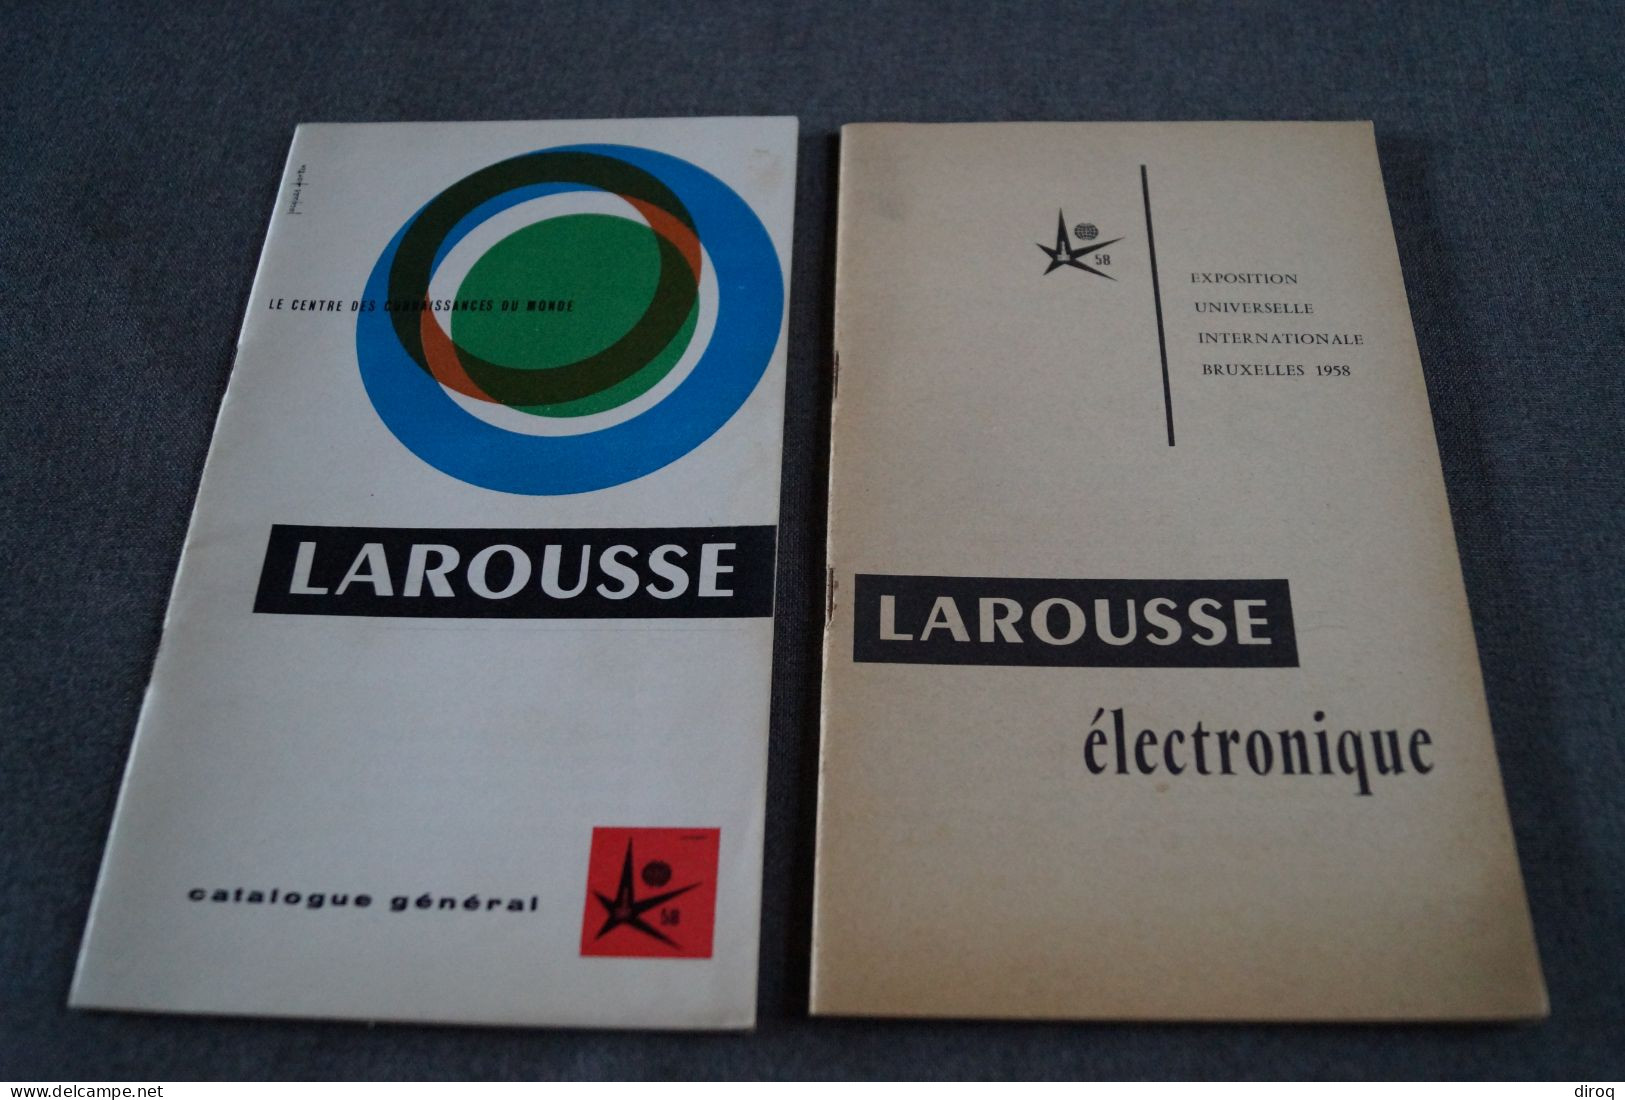 Expo 1958, Bruxelles,publicitaire,Larousse,2 Ouvrages,44 Page Et 34 Pages,20,5 Cm./12,5 Cm. - Advertising